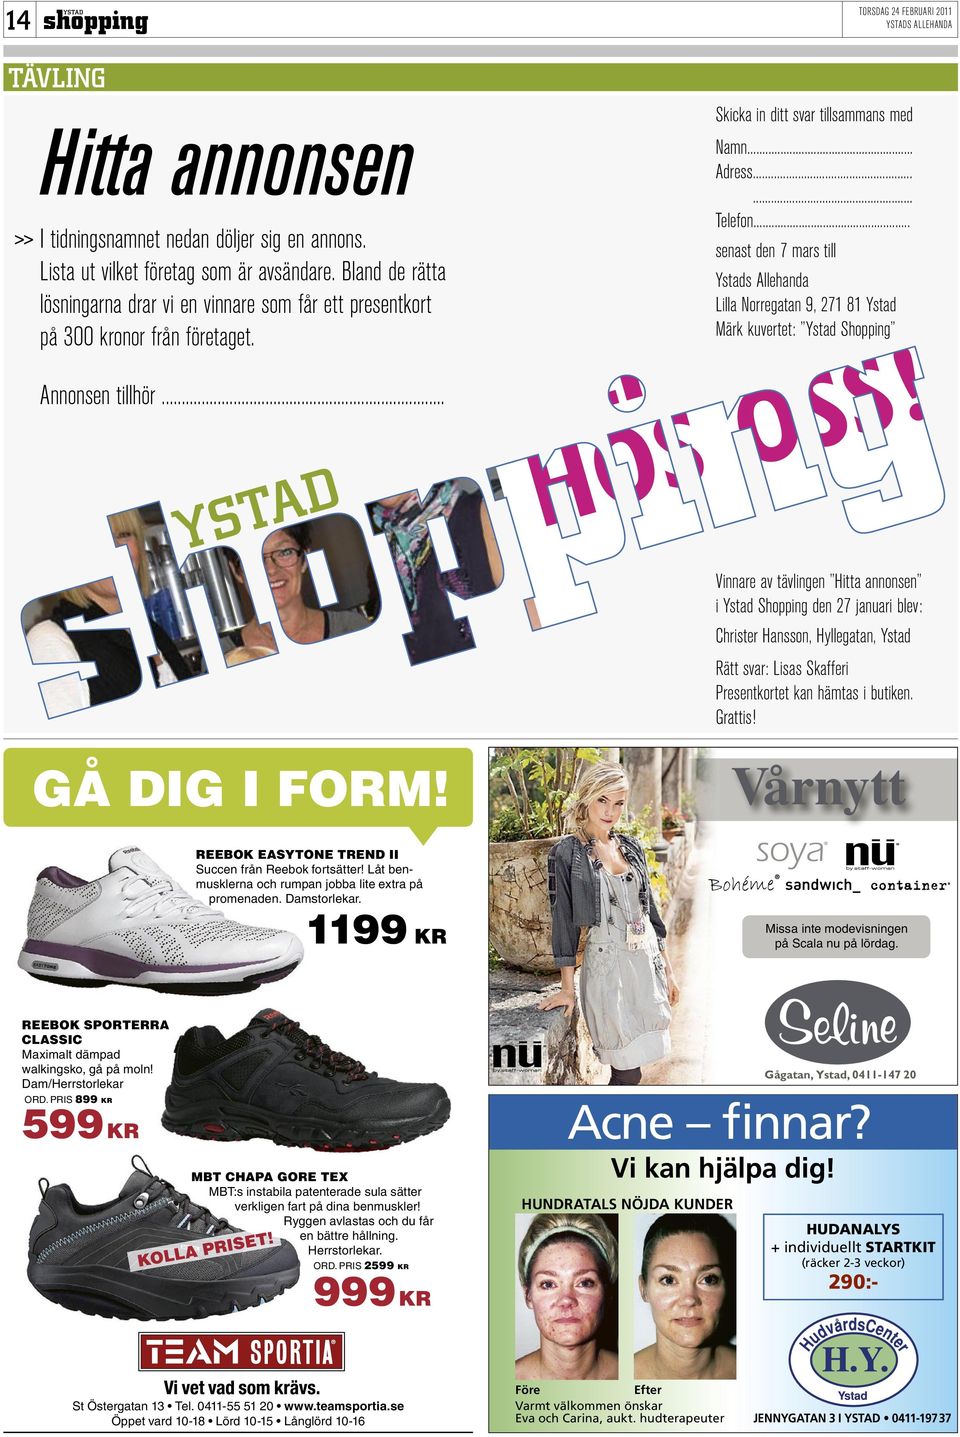 .. senast den 7 mars till Ystads Allehanda Lilla Norregatan 9, 271 81 Ystad Märk kuvertet: Ystad Shopping BLI VÅRFIN HOS OSS!